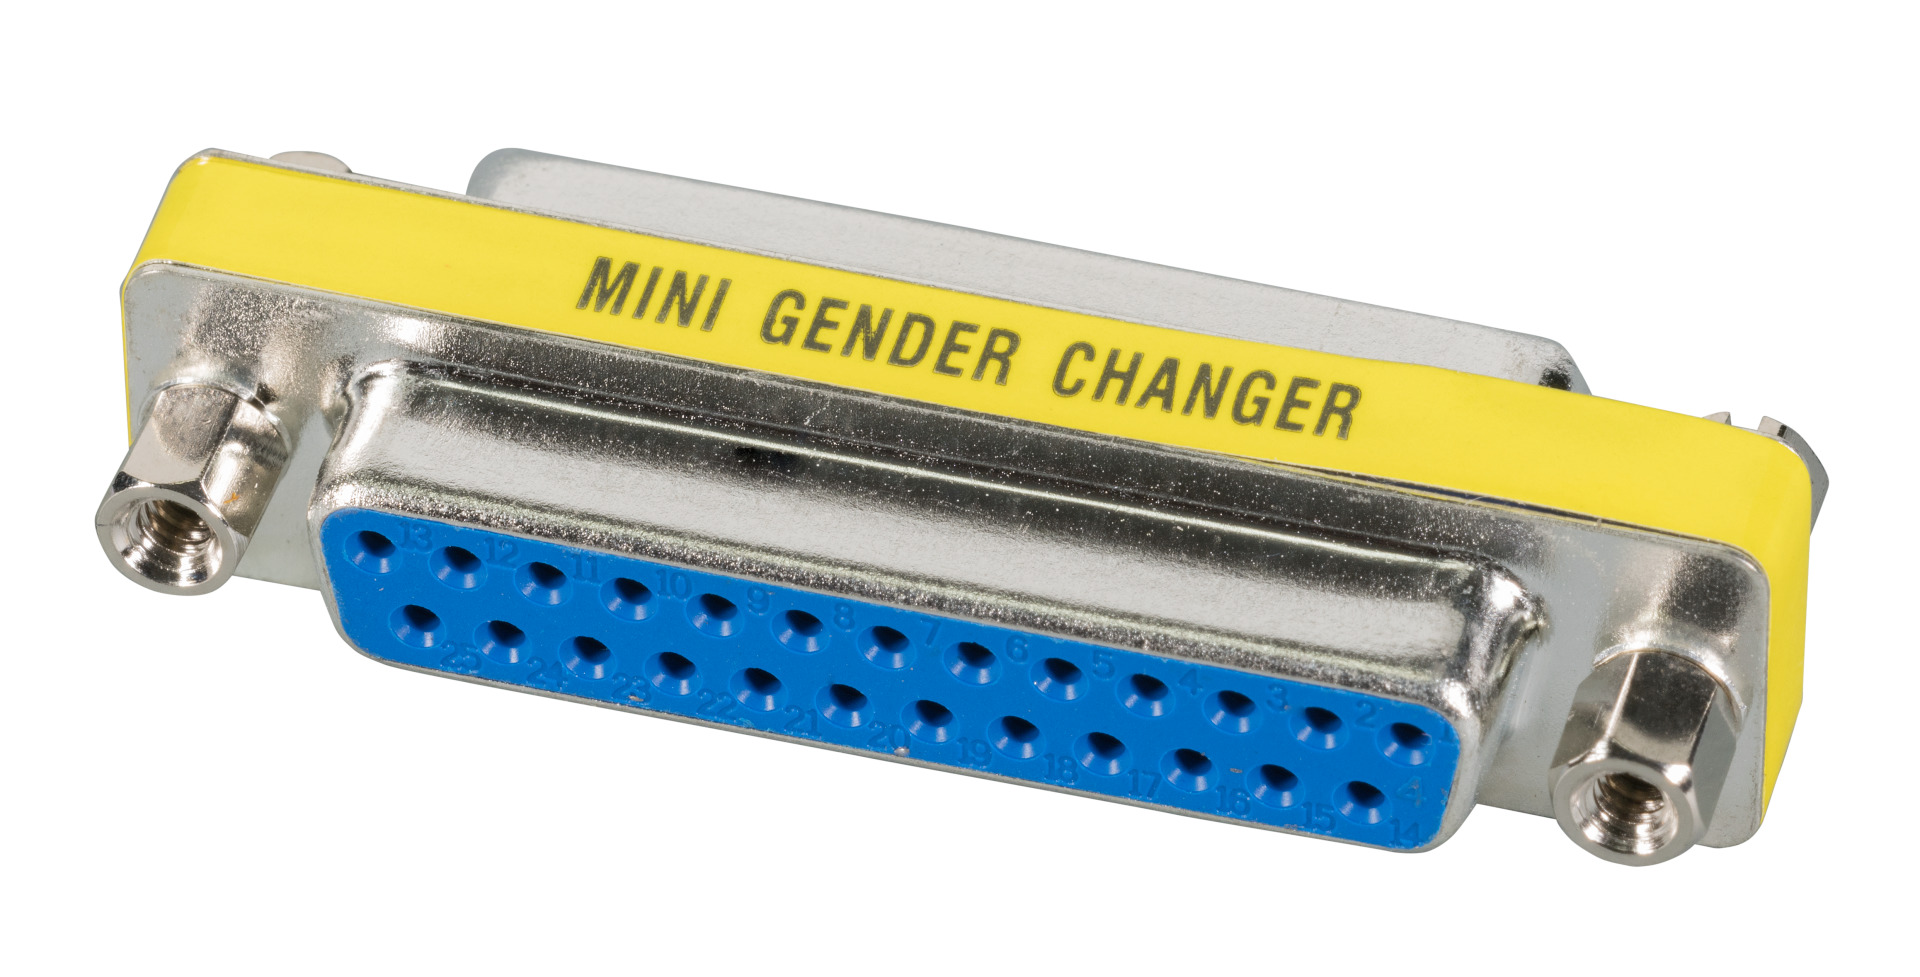 Mini Gender Changer, DSub 25, F-F